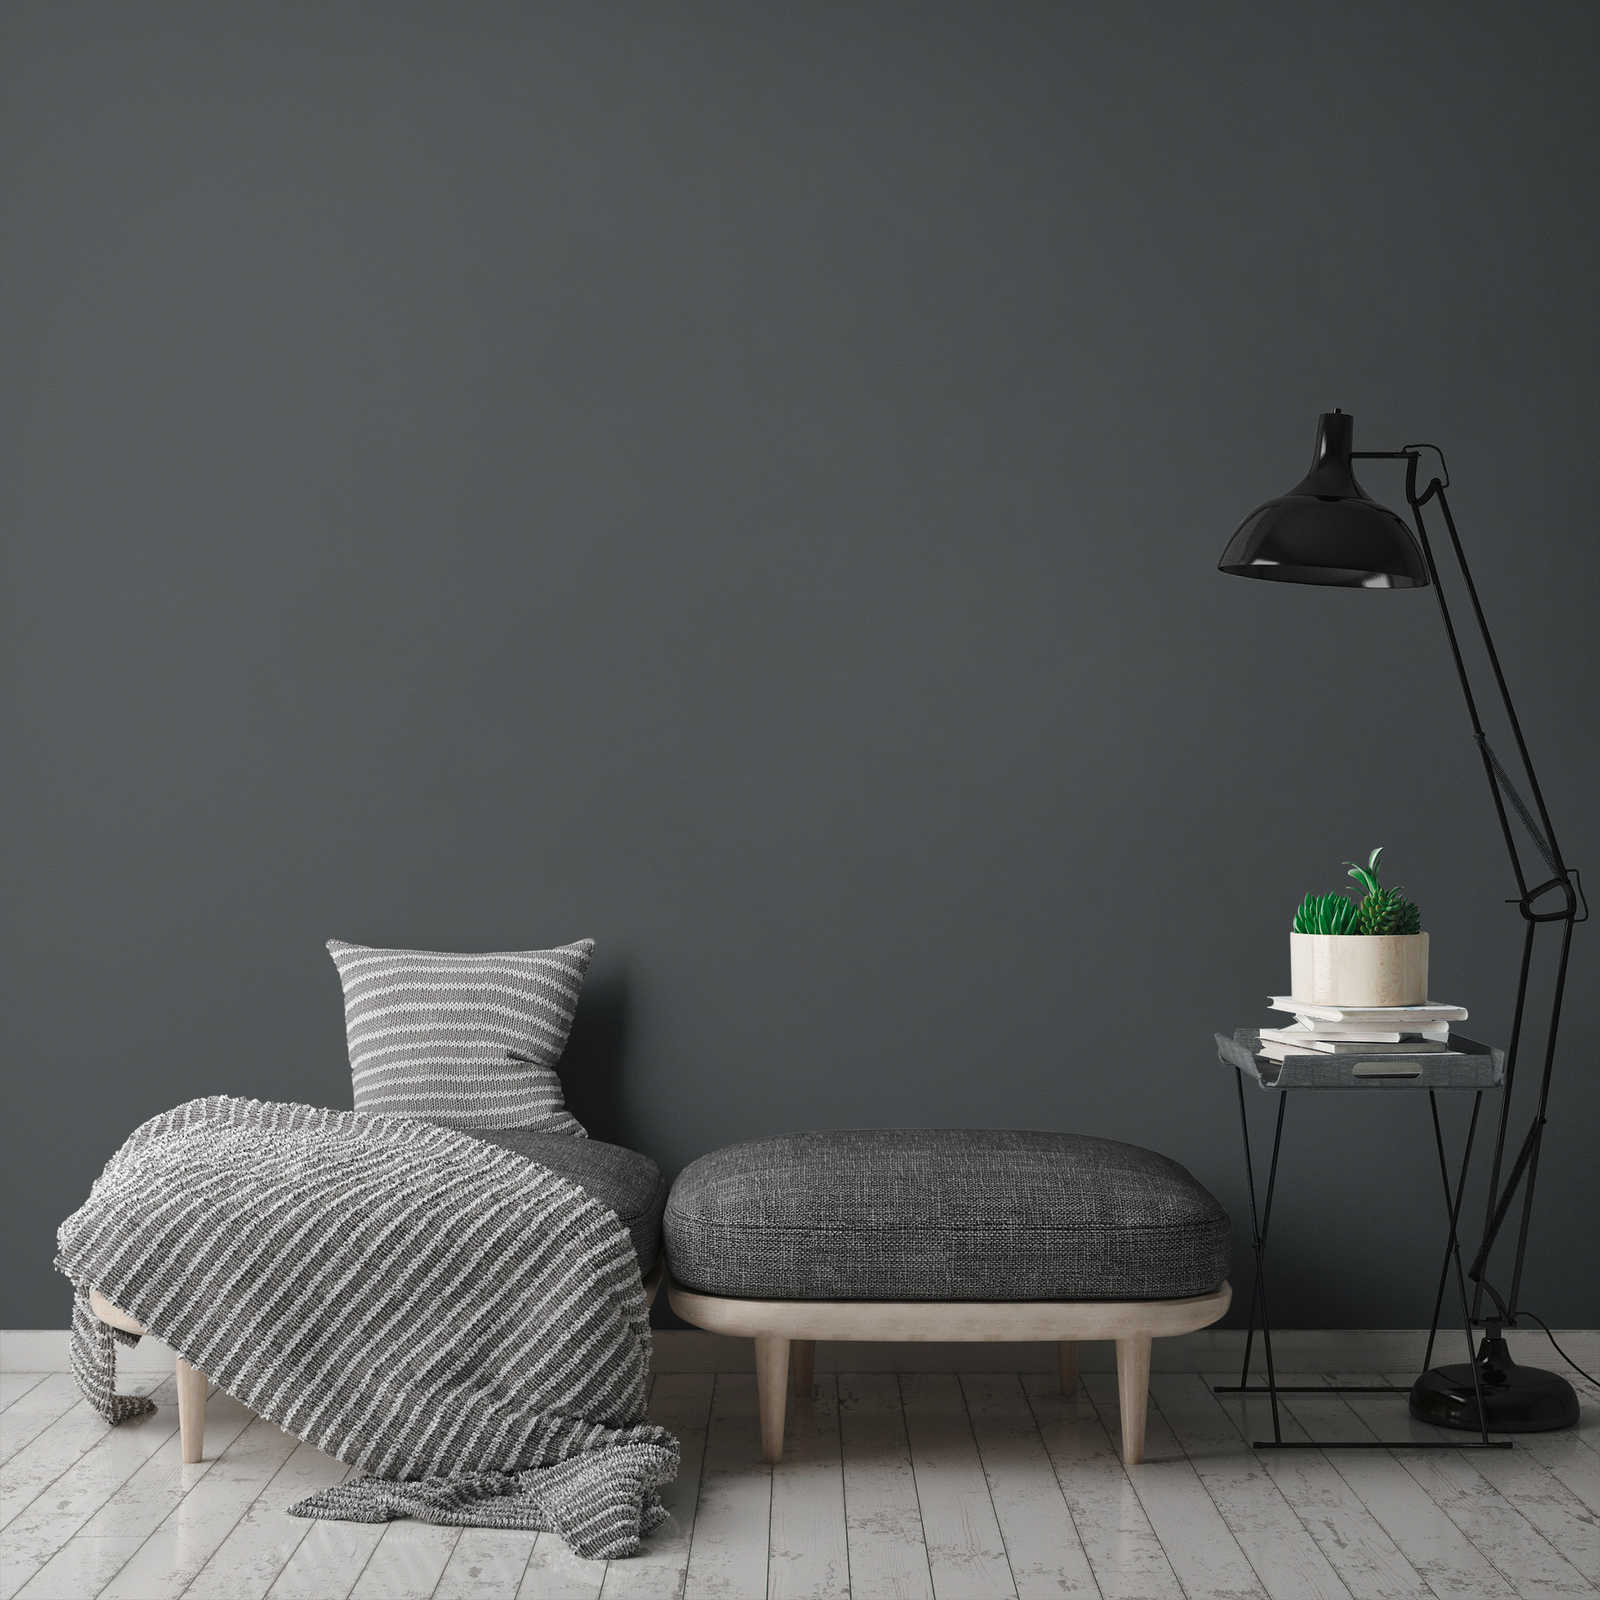             Plain wallpaper dark grey anthracite matt & textured
        